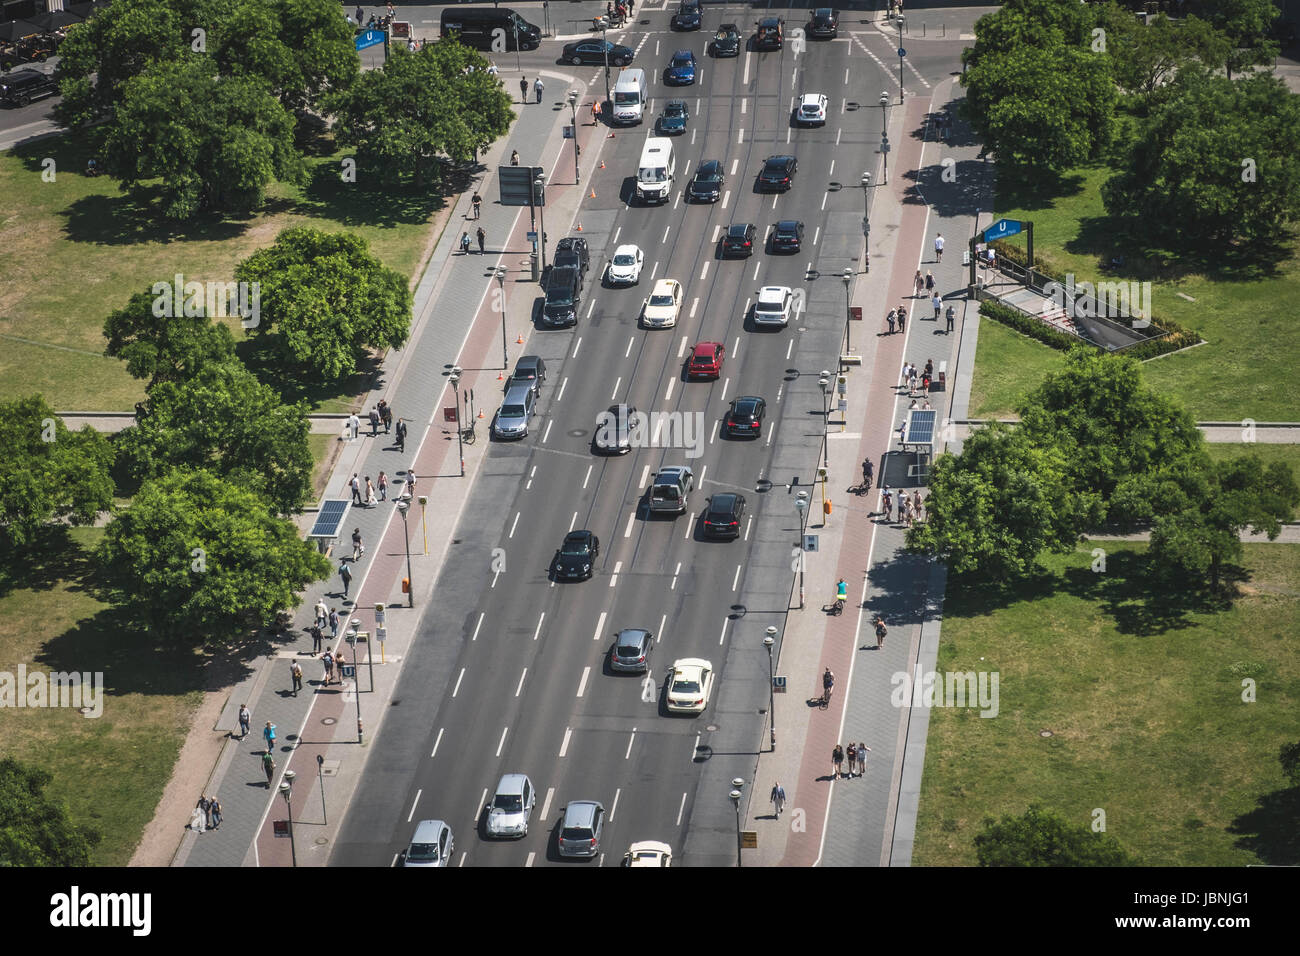 Berlin, Deutschland - 9. Juni 2017: Antenne an einer verkehrsreichen Straße und Gehweg mit Autos und Menschen am Potsdamer Platz in Berlin, Deutschland Stockfoto